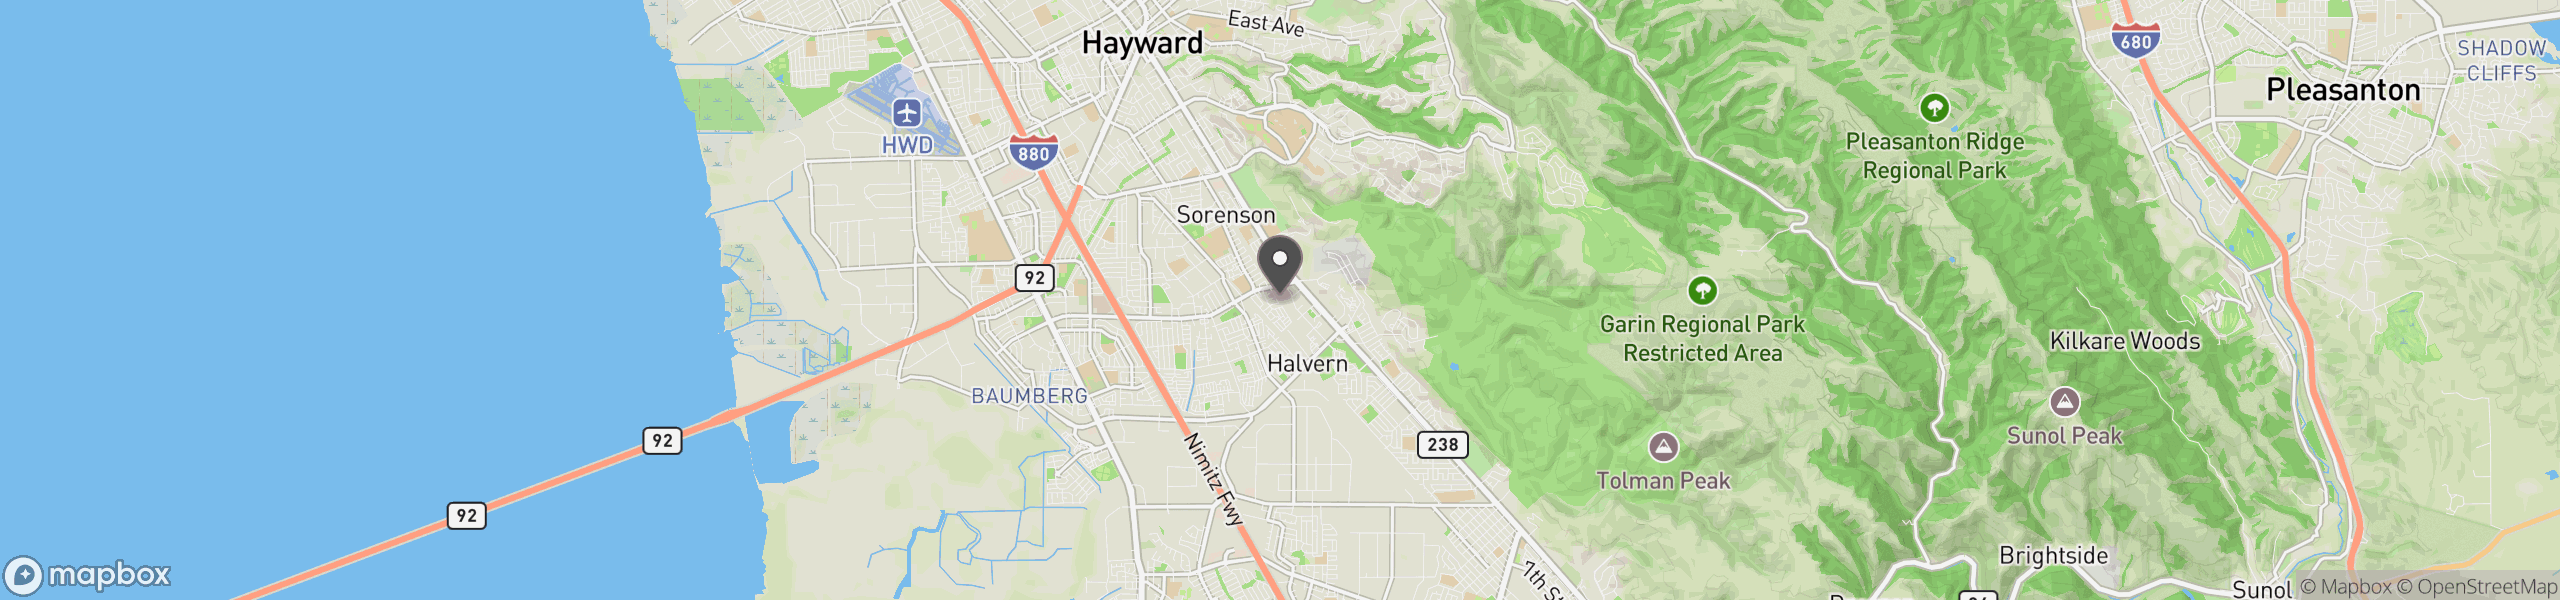 Hayward, CA 94544